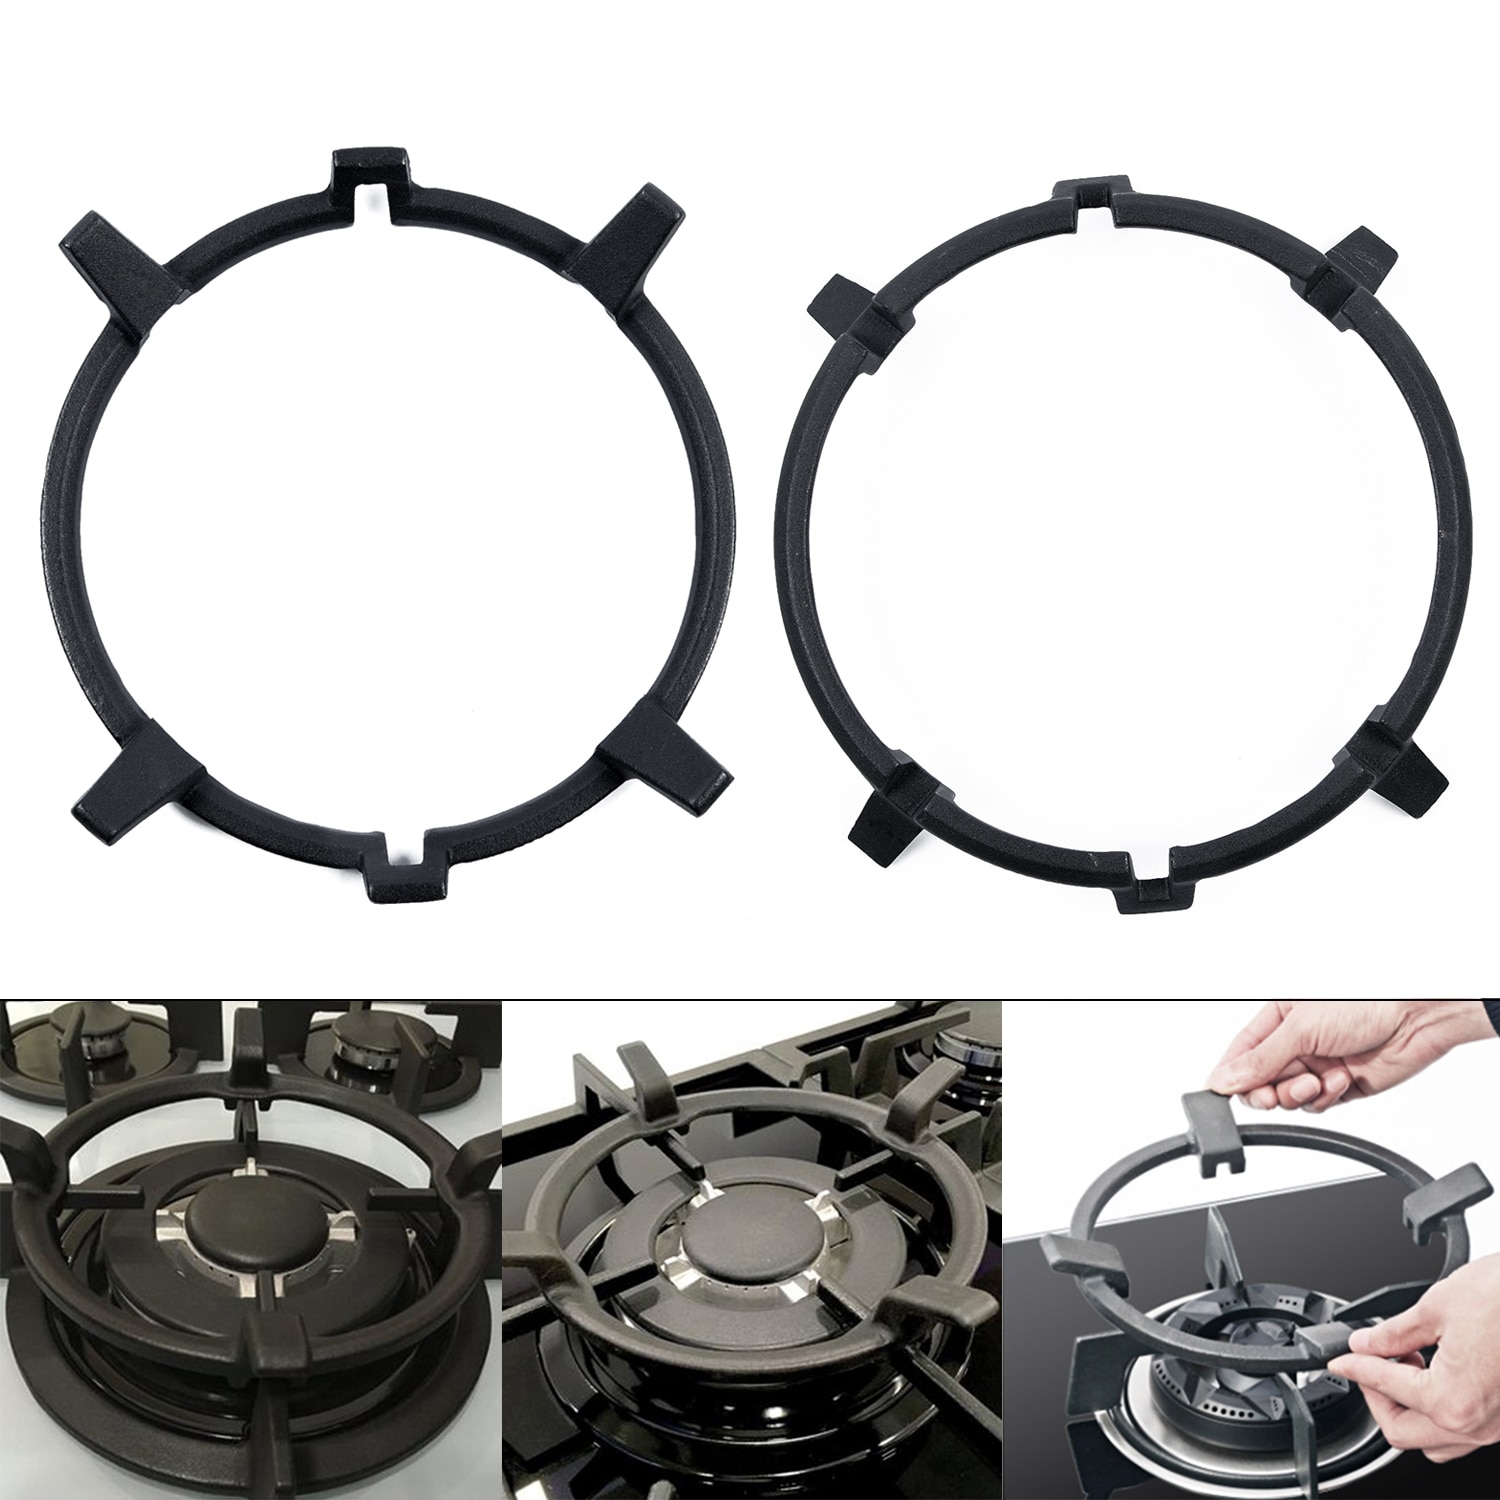 Universal støbejern wok pandestøtte / stander til brændere gaskogeplader og komfurer hjemmeforbrugsartikler